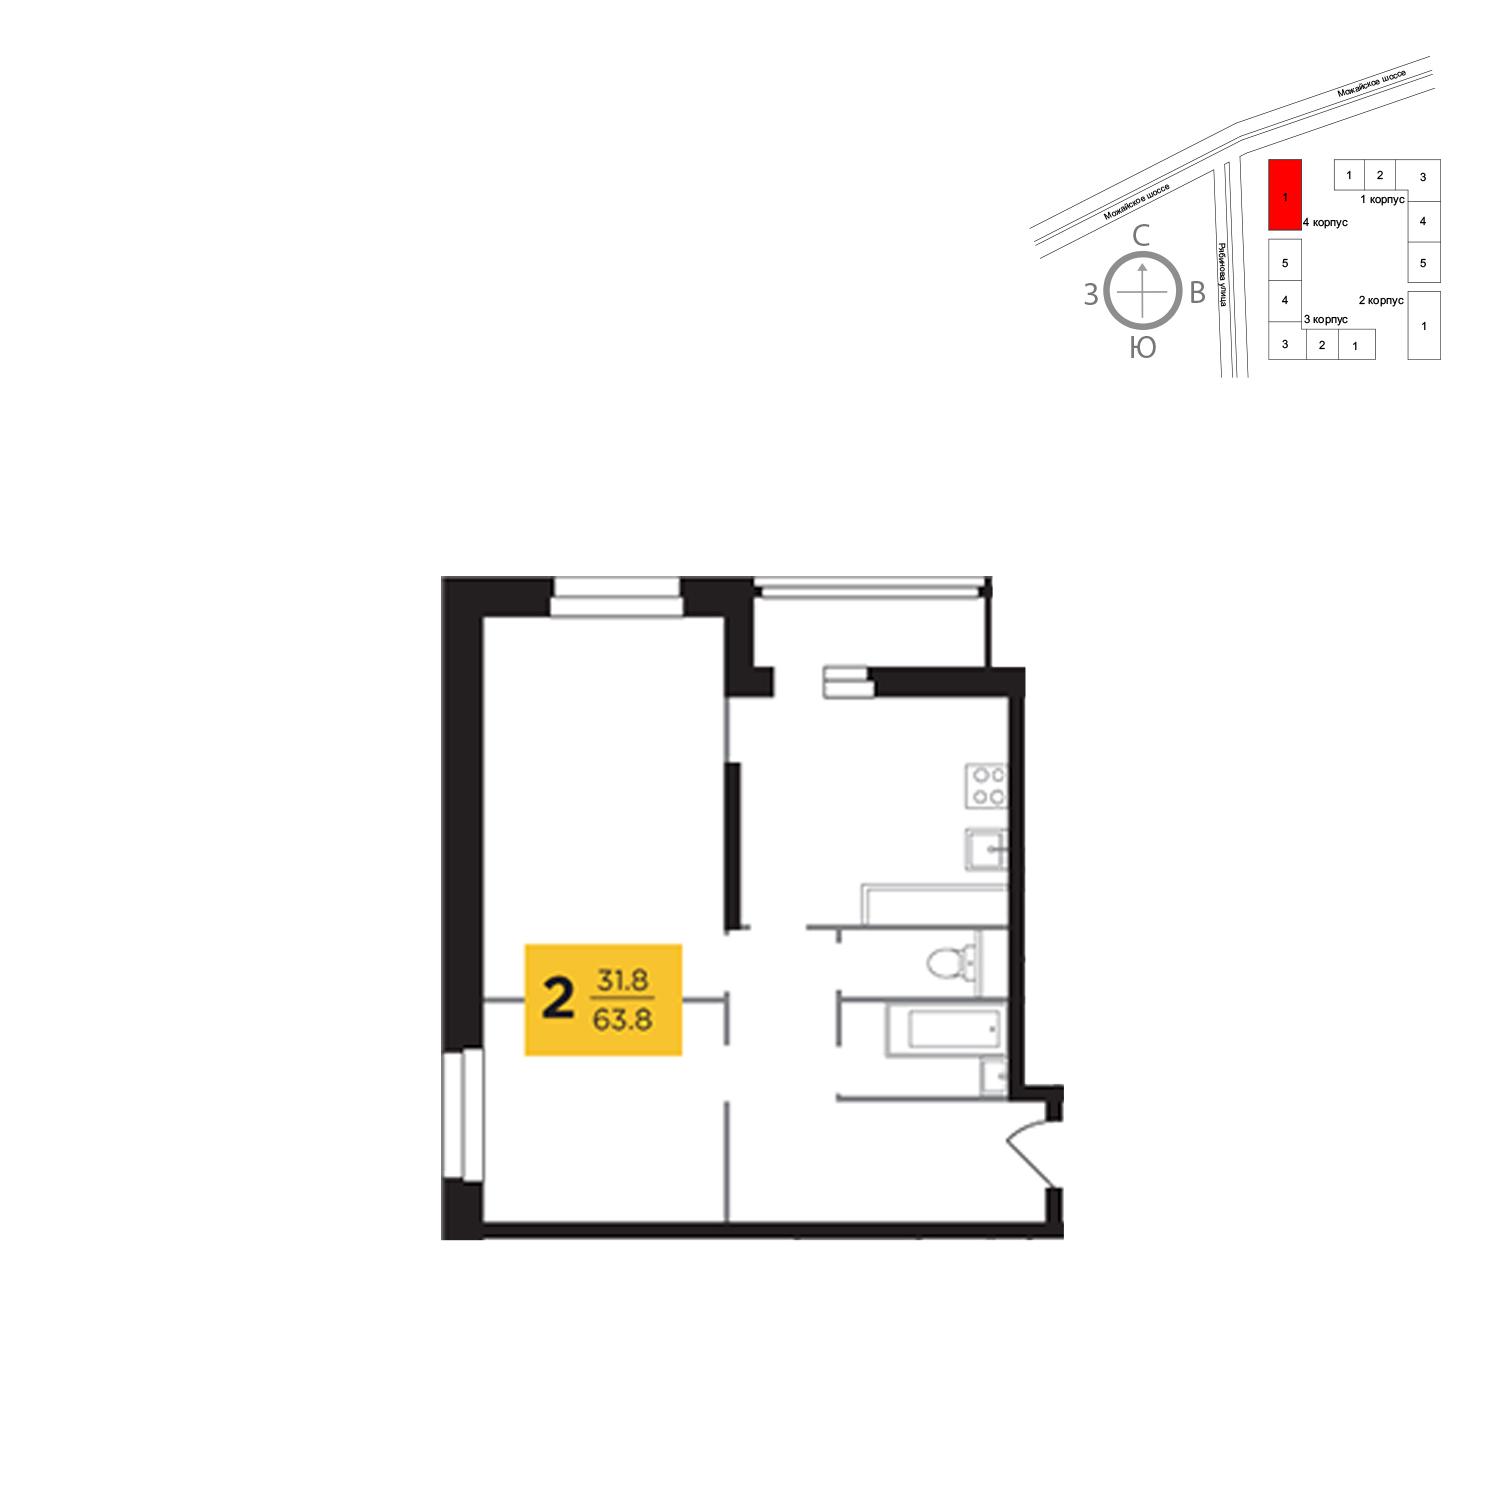 Продаётся 2-комнатная квартира в новостройке 63.8 кв.м. этаж 15/23 за 13 215 459 руб 